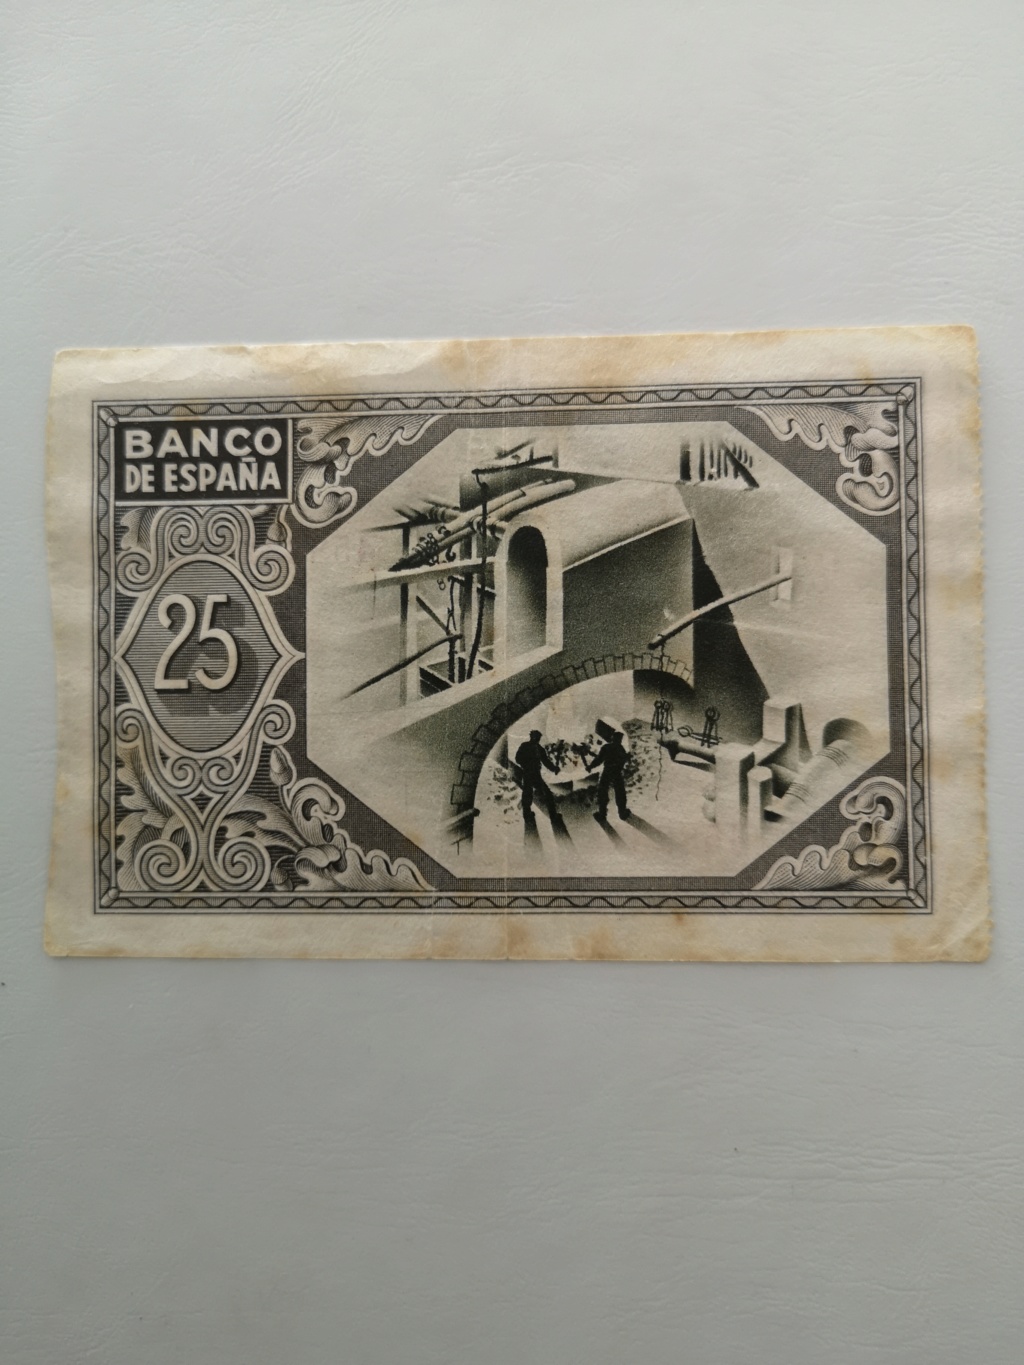 Bilbao - 25 pesetas banco de España en Bilbao  15937611